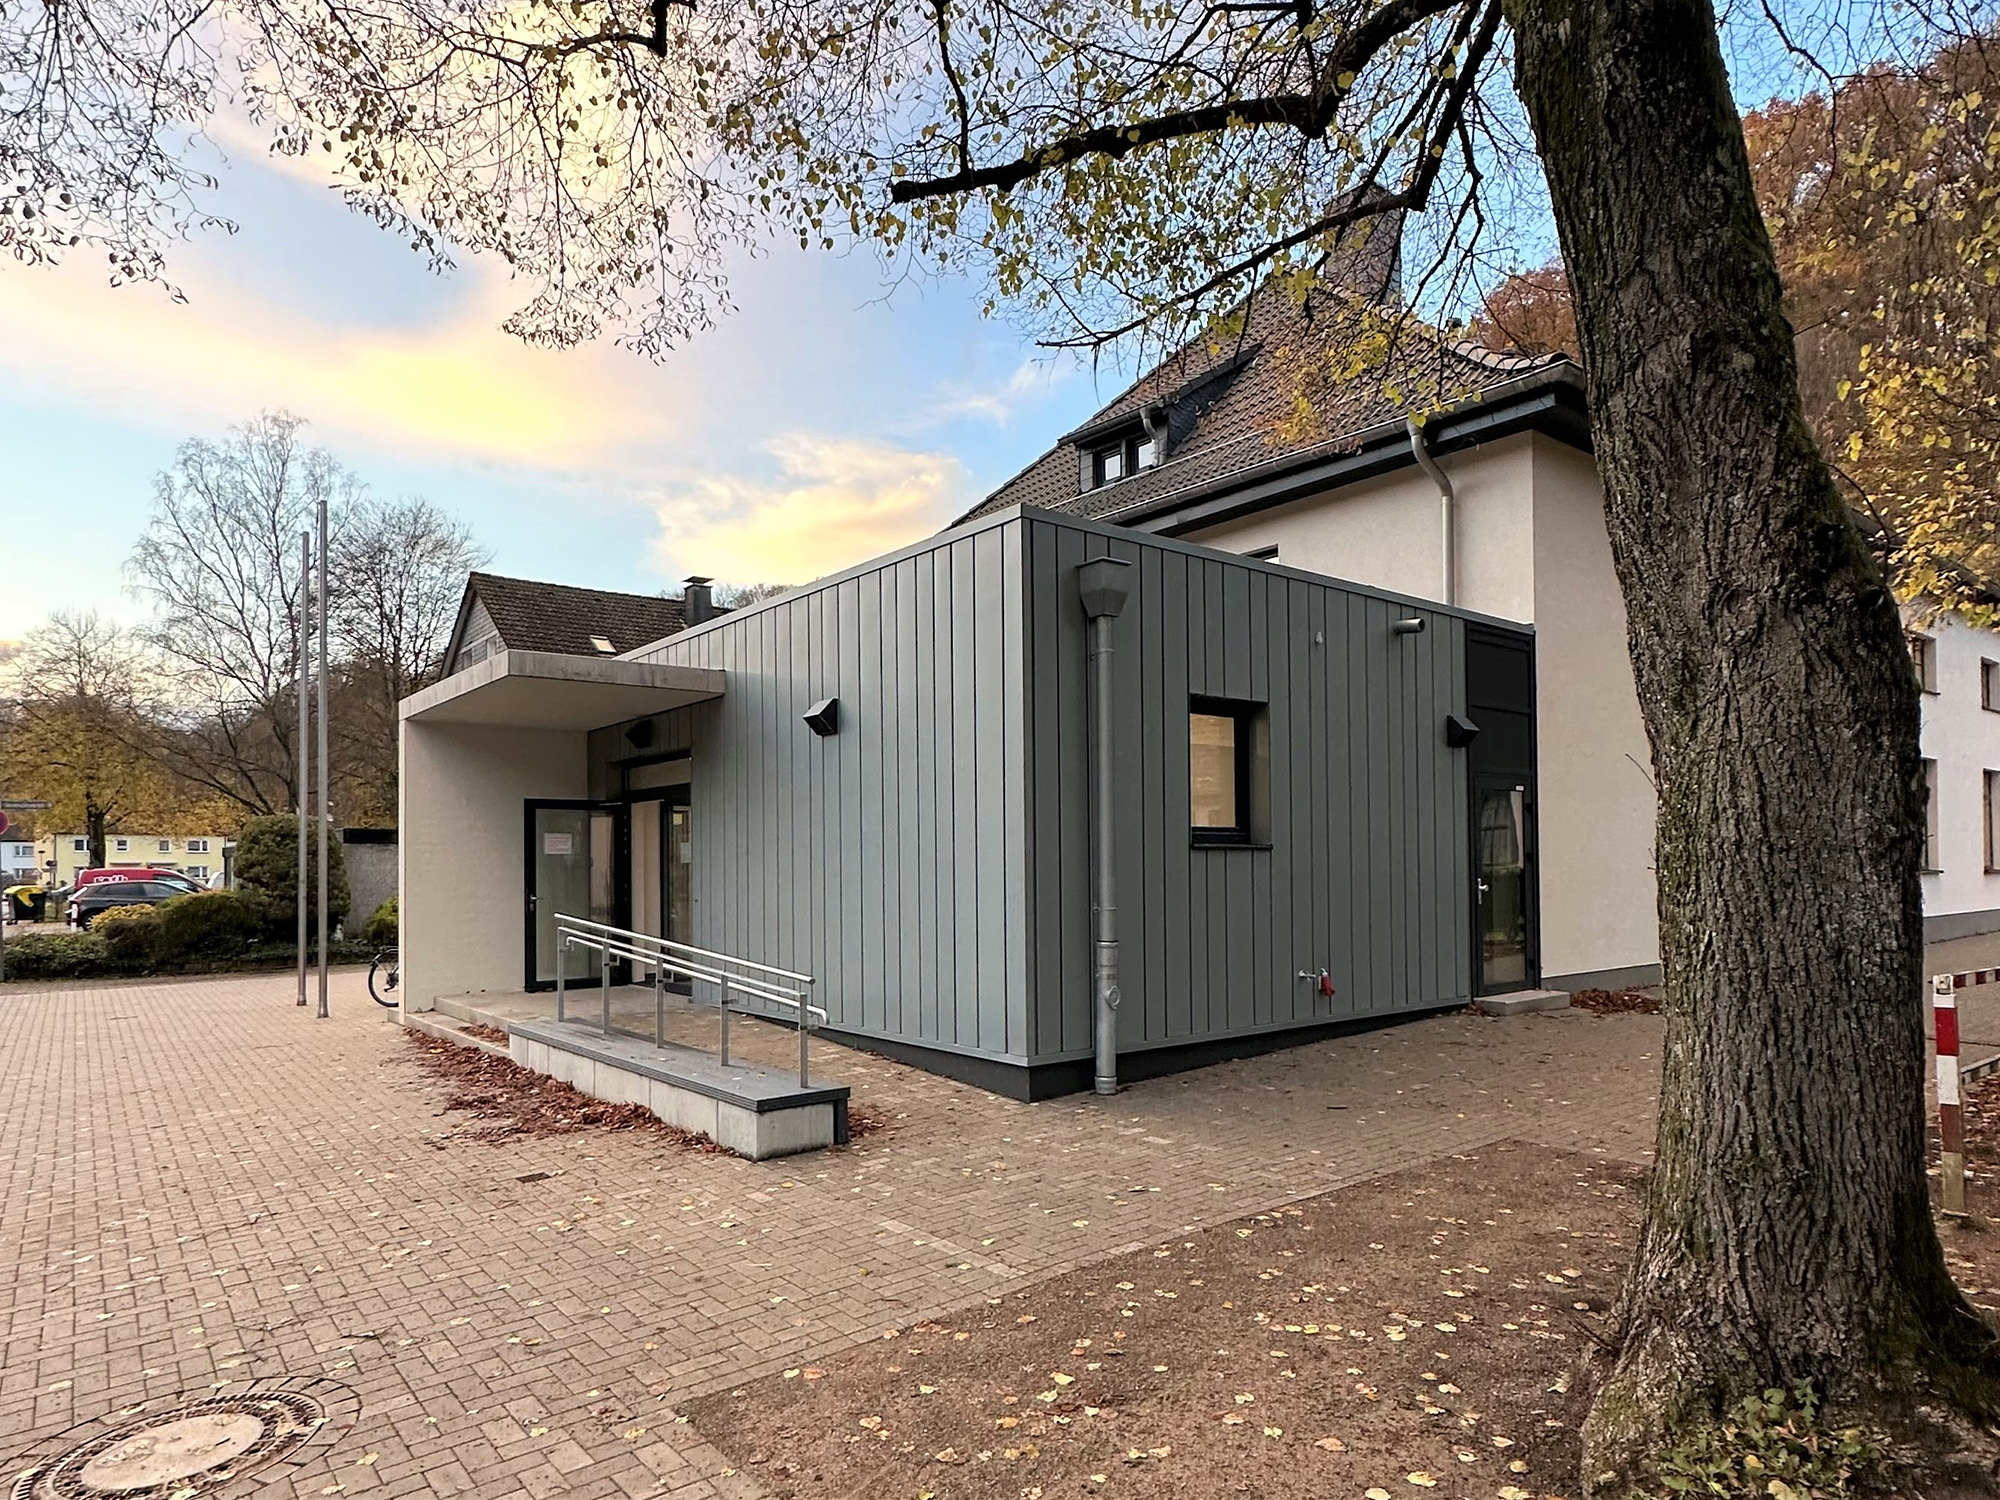 Teil-Sanierung + Anbau, Turnhalle + Vereinshaus, Solingen - ah-architektur.de | Alisic-Haverkamp – Wir verfolgen das Ziel, funktionelle, kostenbewusste und ambitioniert gestaltete Architektur zu schaffen, die einen ah-Effekt auslöst.